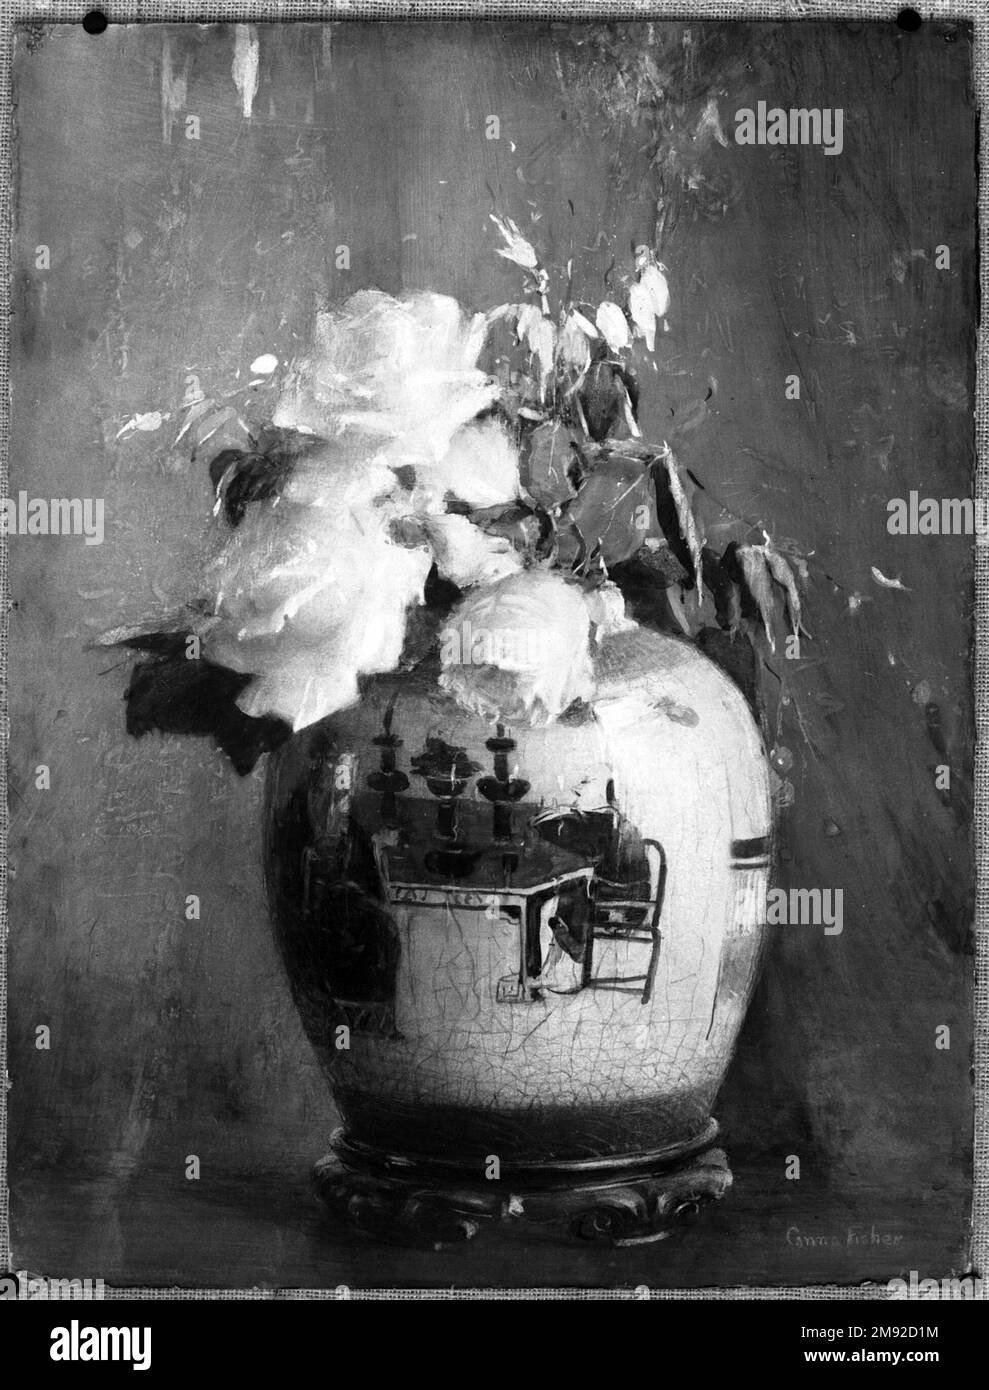 Les roses blanches Anna S. Fisher (américaine, 1873-1942). Les Roses blanches, avant 1922. Aquarelle opaque, graphite, touches de pastel, et touches d'aquarelle transparente sur crème, papier vélin modérément épais légèrement texturé monté sur carton de pâte à papier, 24 15/16 x 19 po. (63,3 x 48,3 cm). Avec sa combinaison de fleurs peintes par un naturel et d’objets asiatiques, cette étonnante aquarelle rappelle les vies encore présentes de John la Farge, et démontre la fascination persistante des artistes occidentaux pour l’art de l’extrême-Orient jusqu’au XXe siècle. Comme la Farge, qui était l'un des plus anciens et des plus anciens Banque D'Images